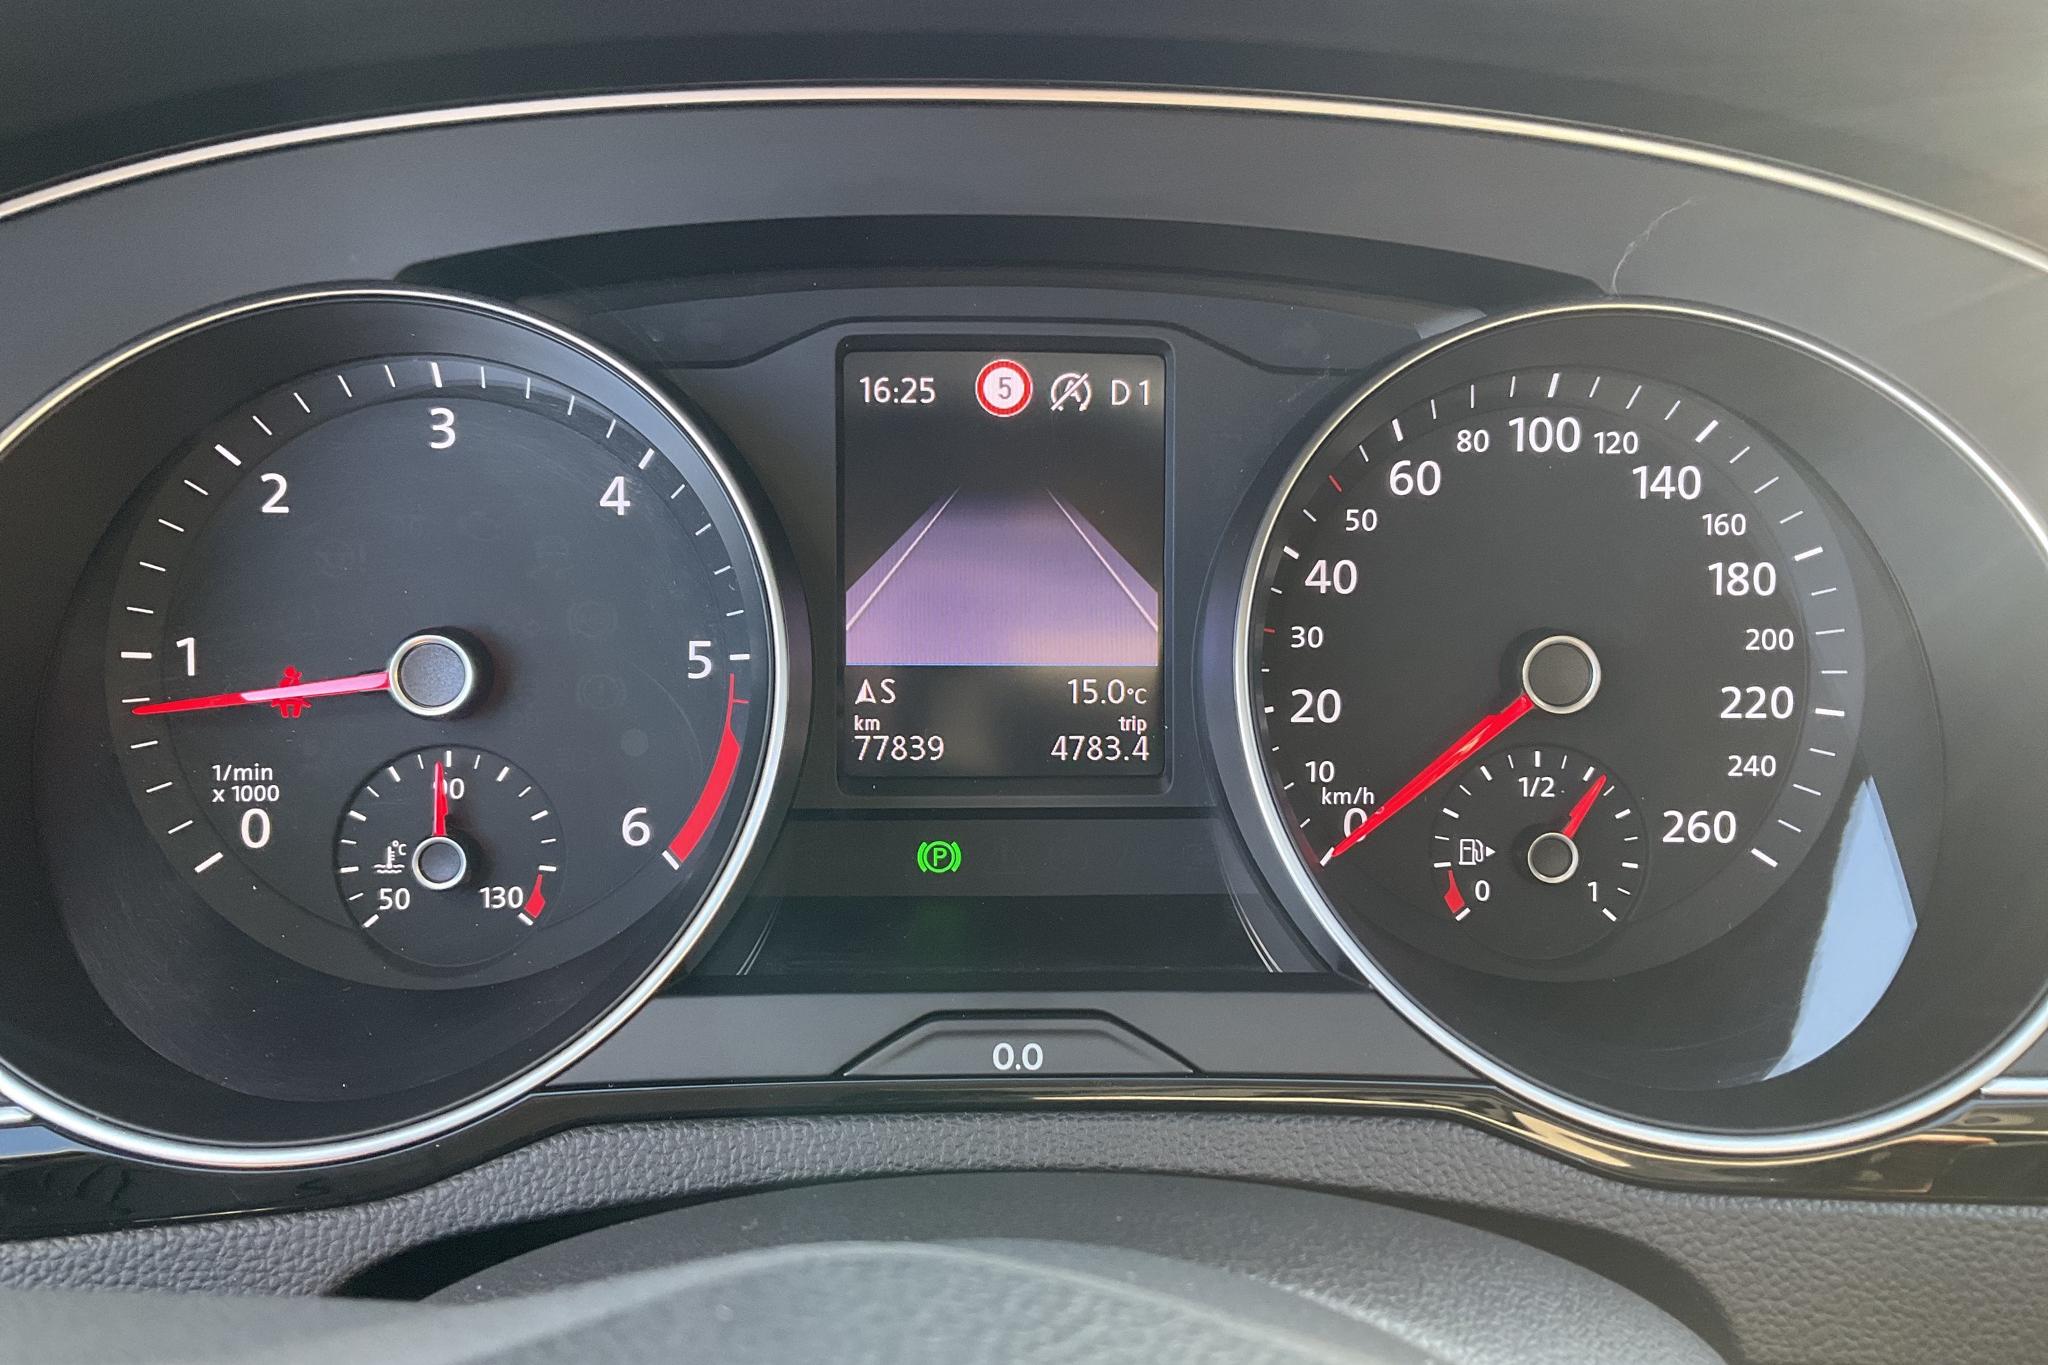 VW Passat 2.0 TDI Sportscombi 4MOTION (190hk) - 7 783 mil - Automat - blå - 2020